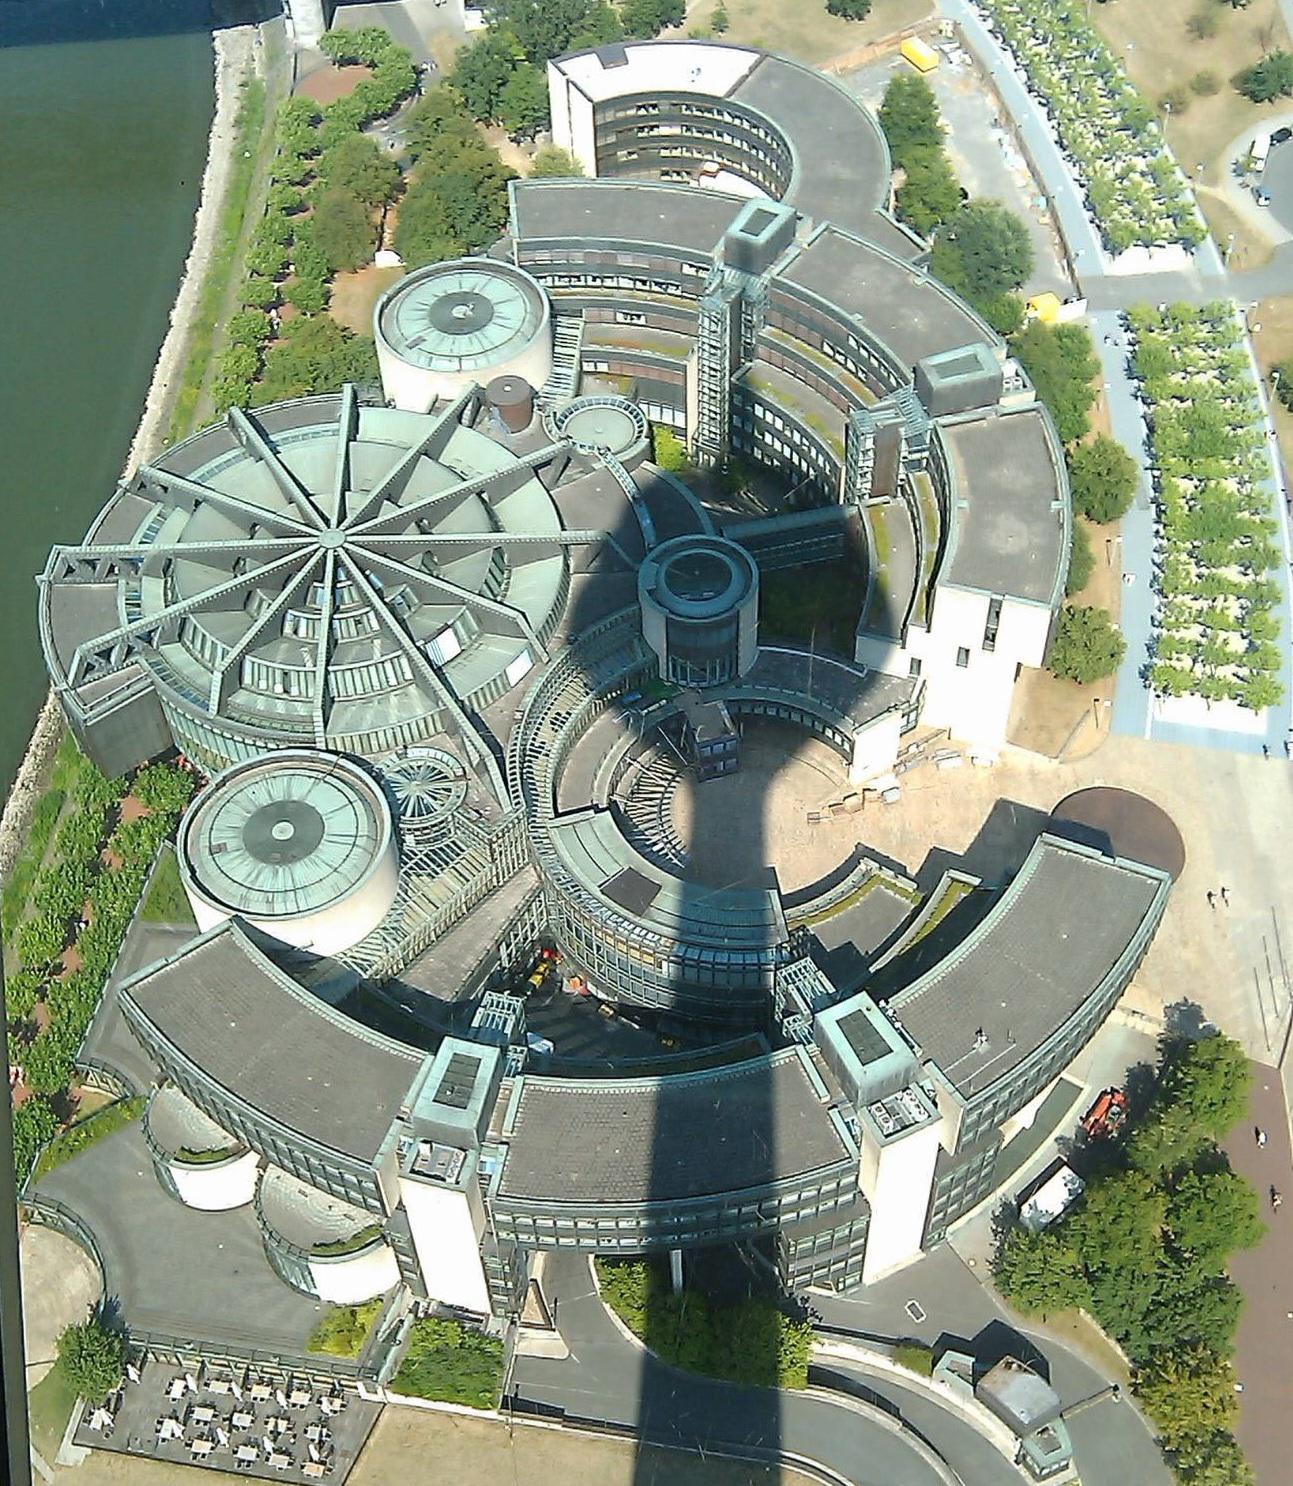 Landtagsgebäude Nordrhein-Westfalen in Duesseldorf, Germany